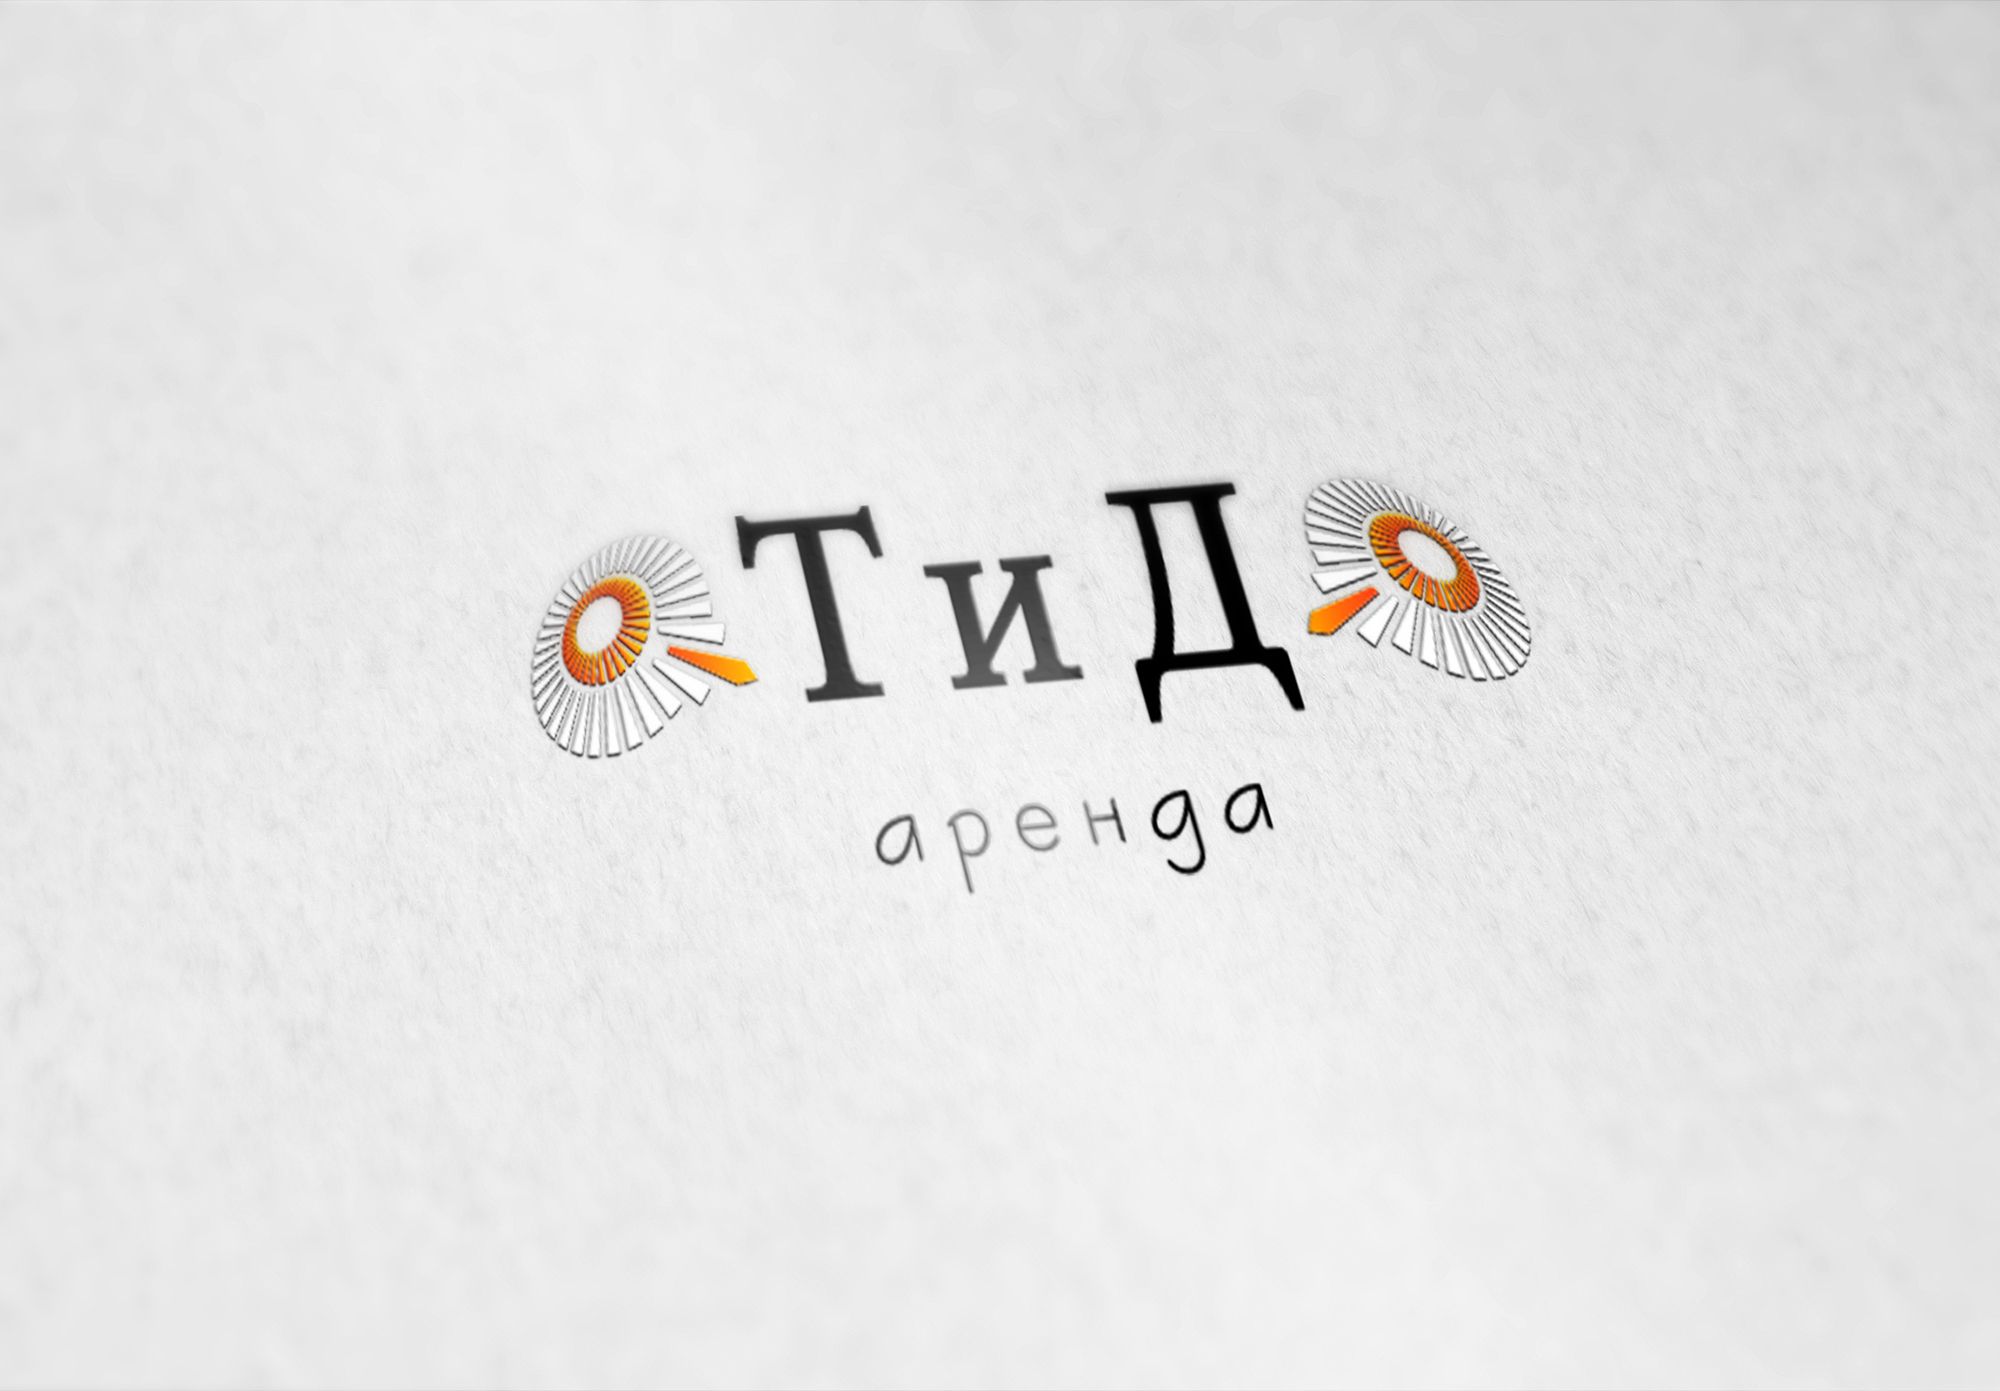 Логотип для компании ОТиДО - дизайнер pups42